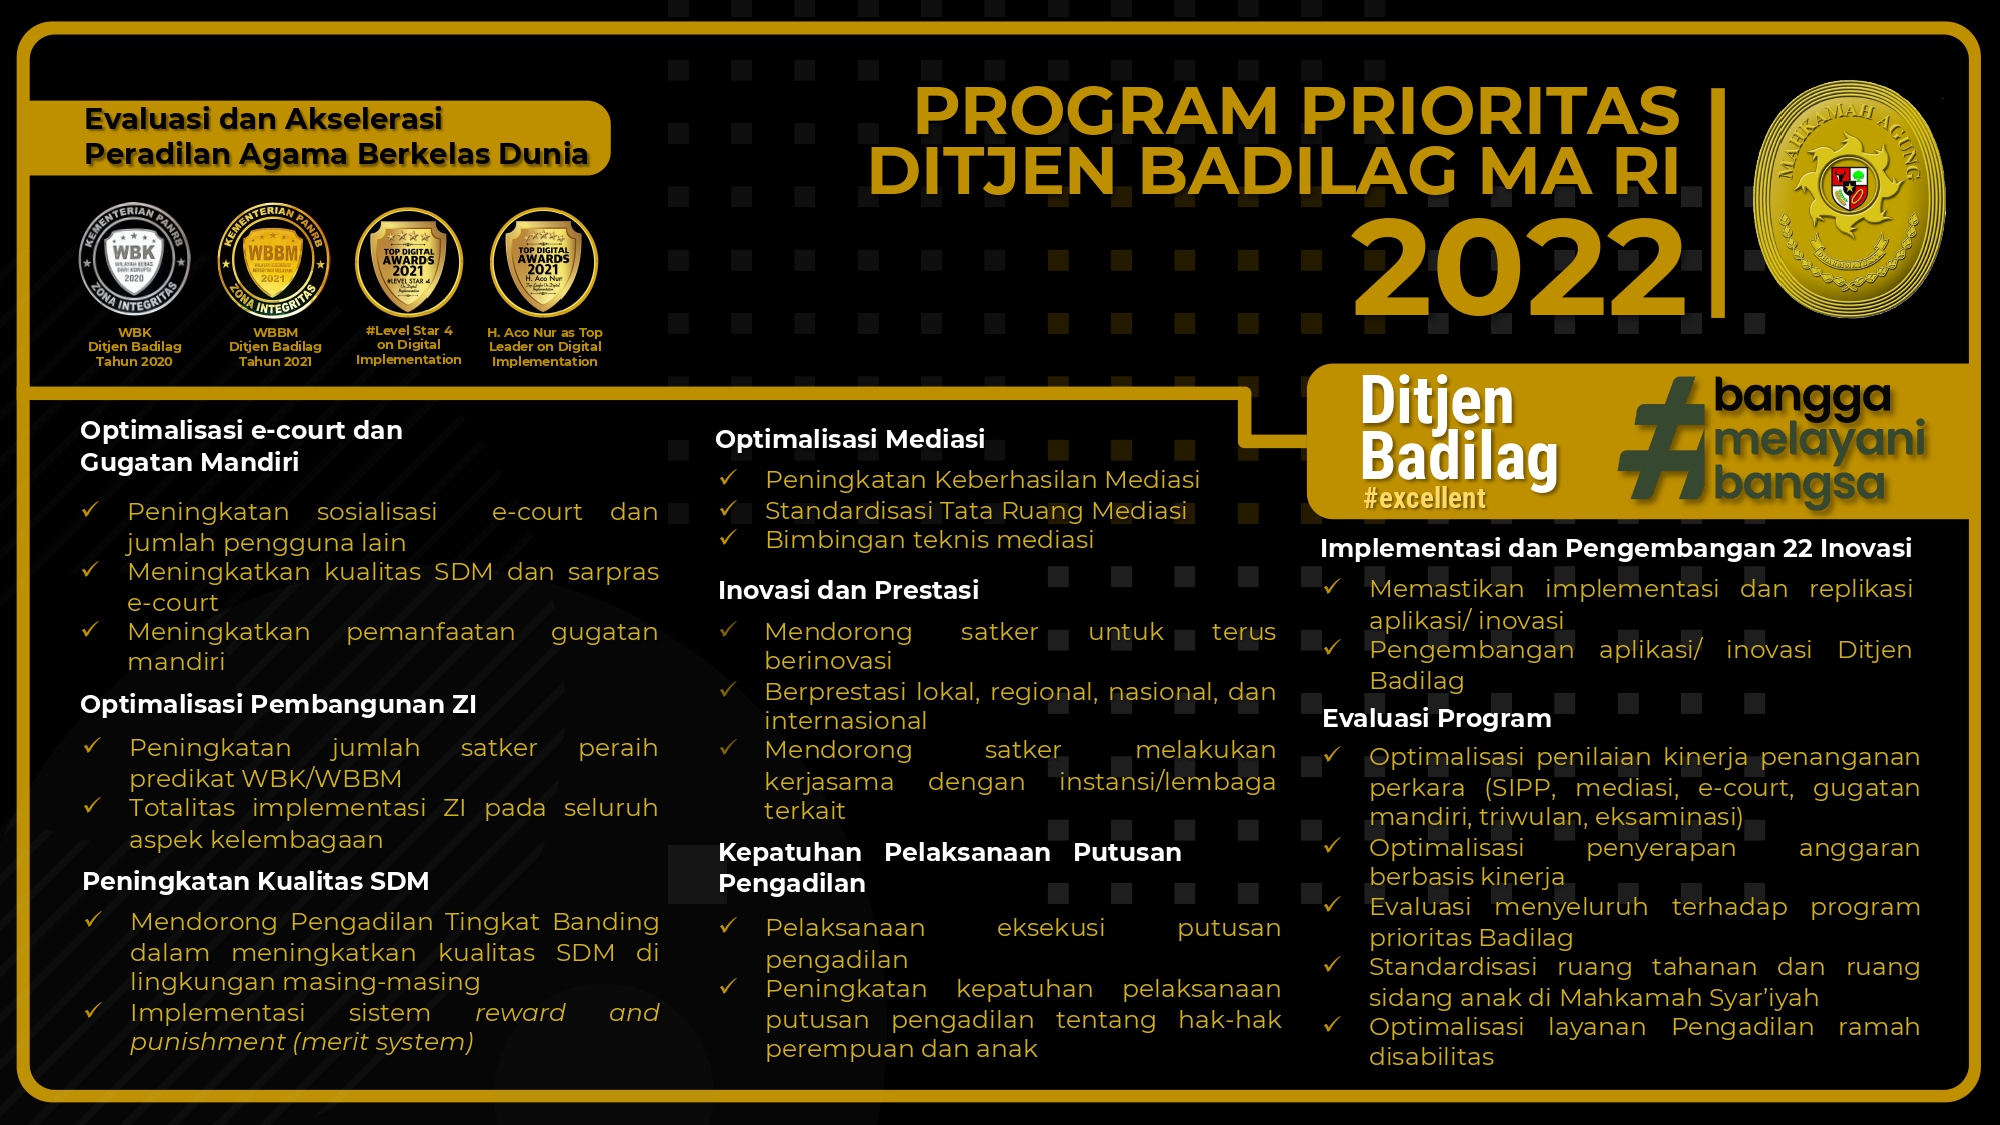 Program Prioritas Ditjen Badilag